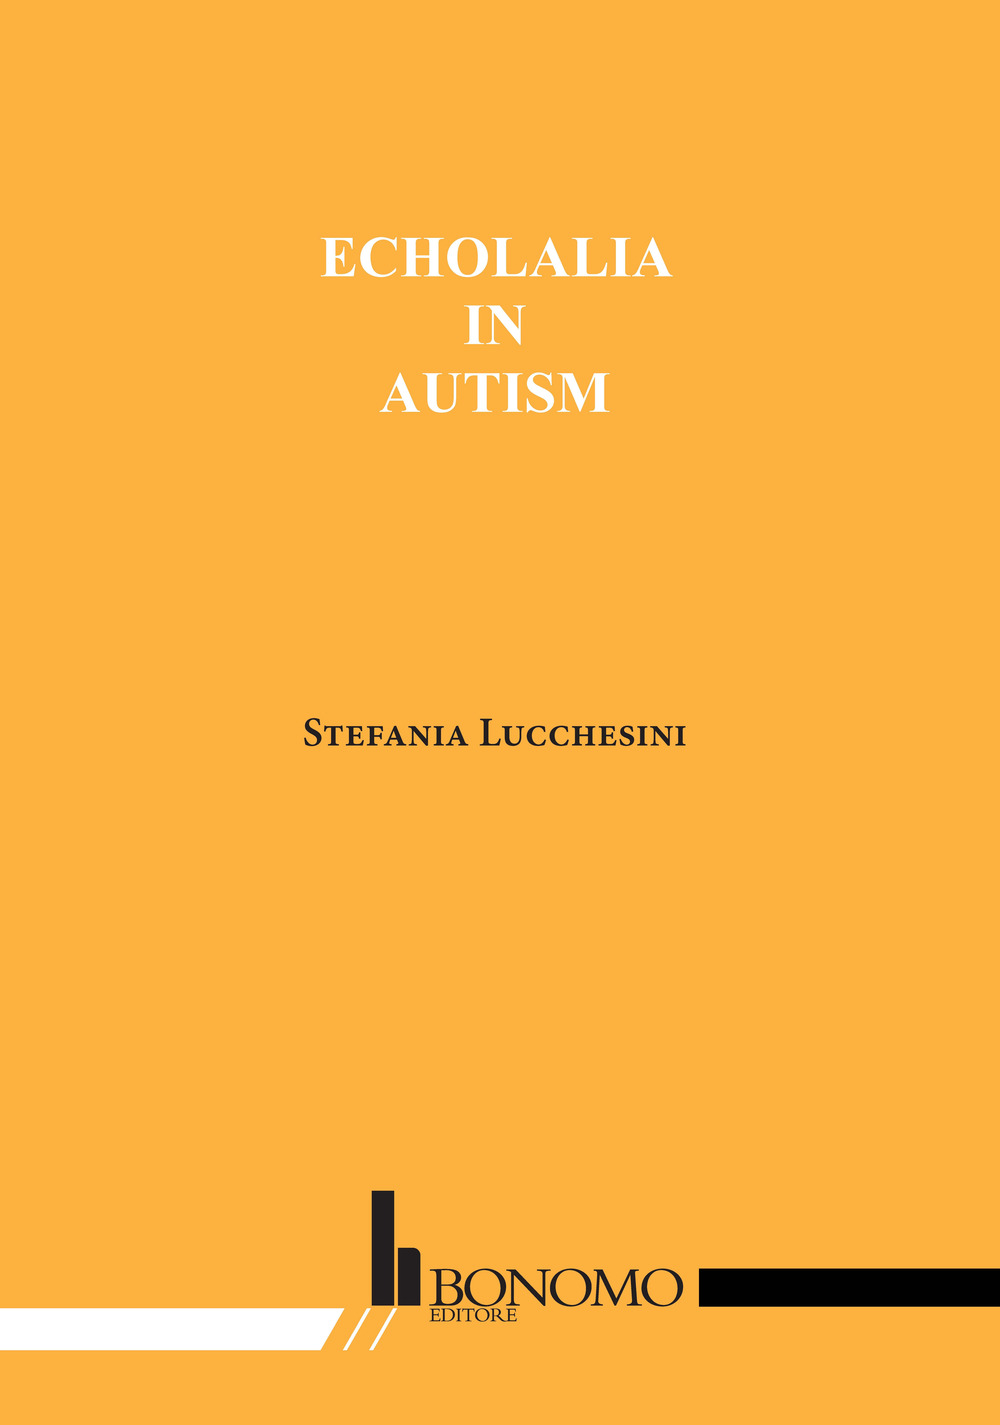 Echolalia in autism